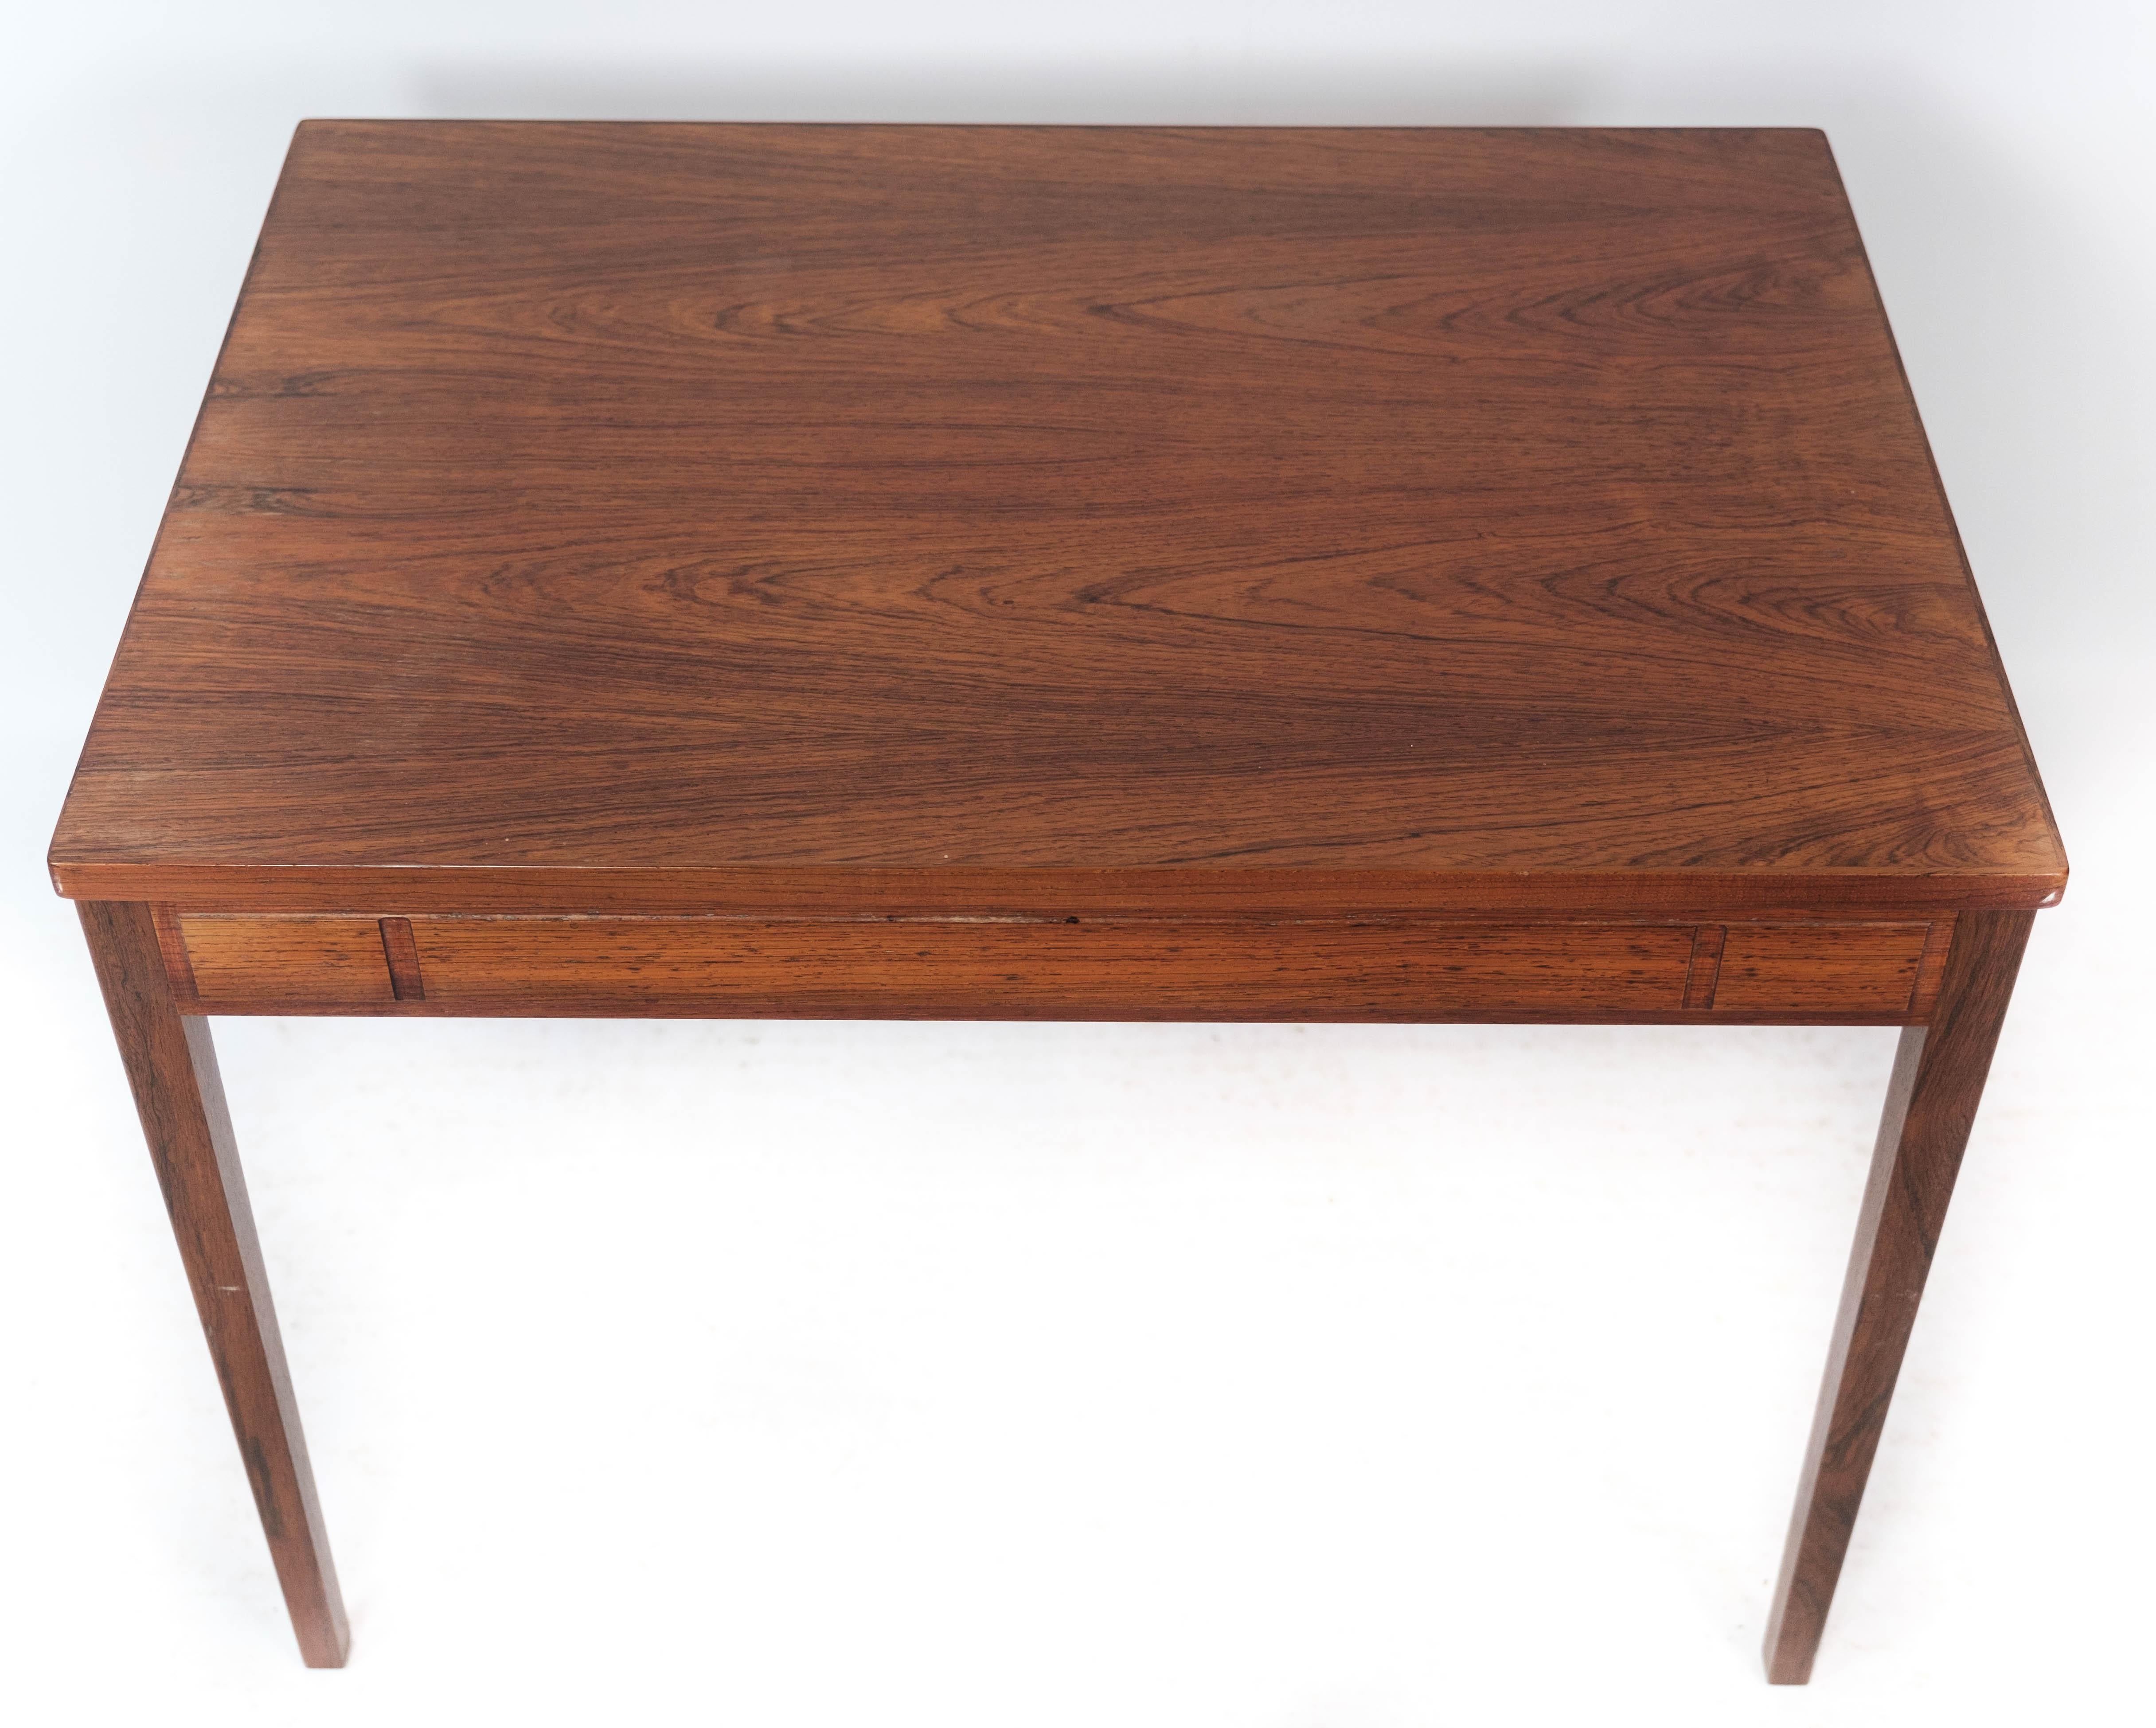 
La table d'appoint fabriquée en bois de rose et illustrant le design danois des années 1960 est un exemple frappant de l'élégance moderne du milieu du siècle.

Le bois de rose, prisé pour ses teintes riches et ses veinures distinctives, confère à